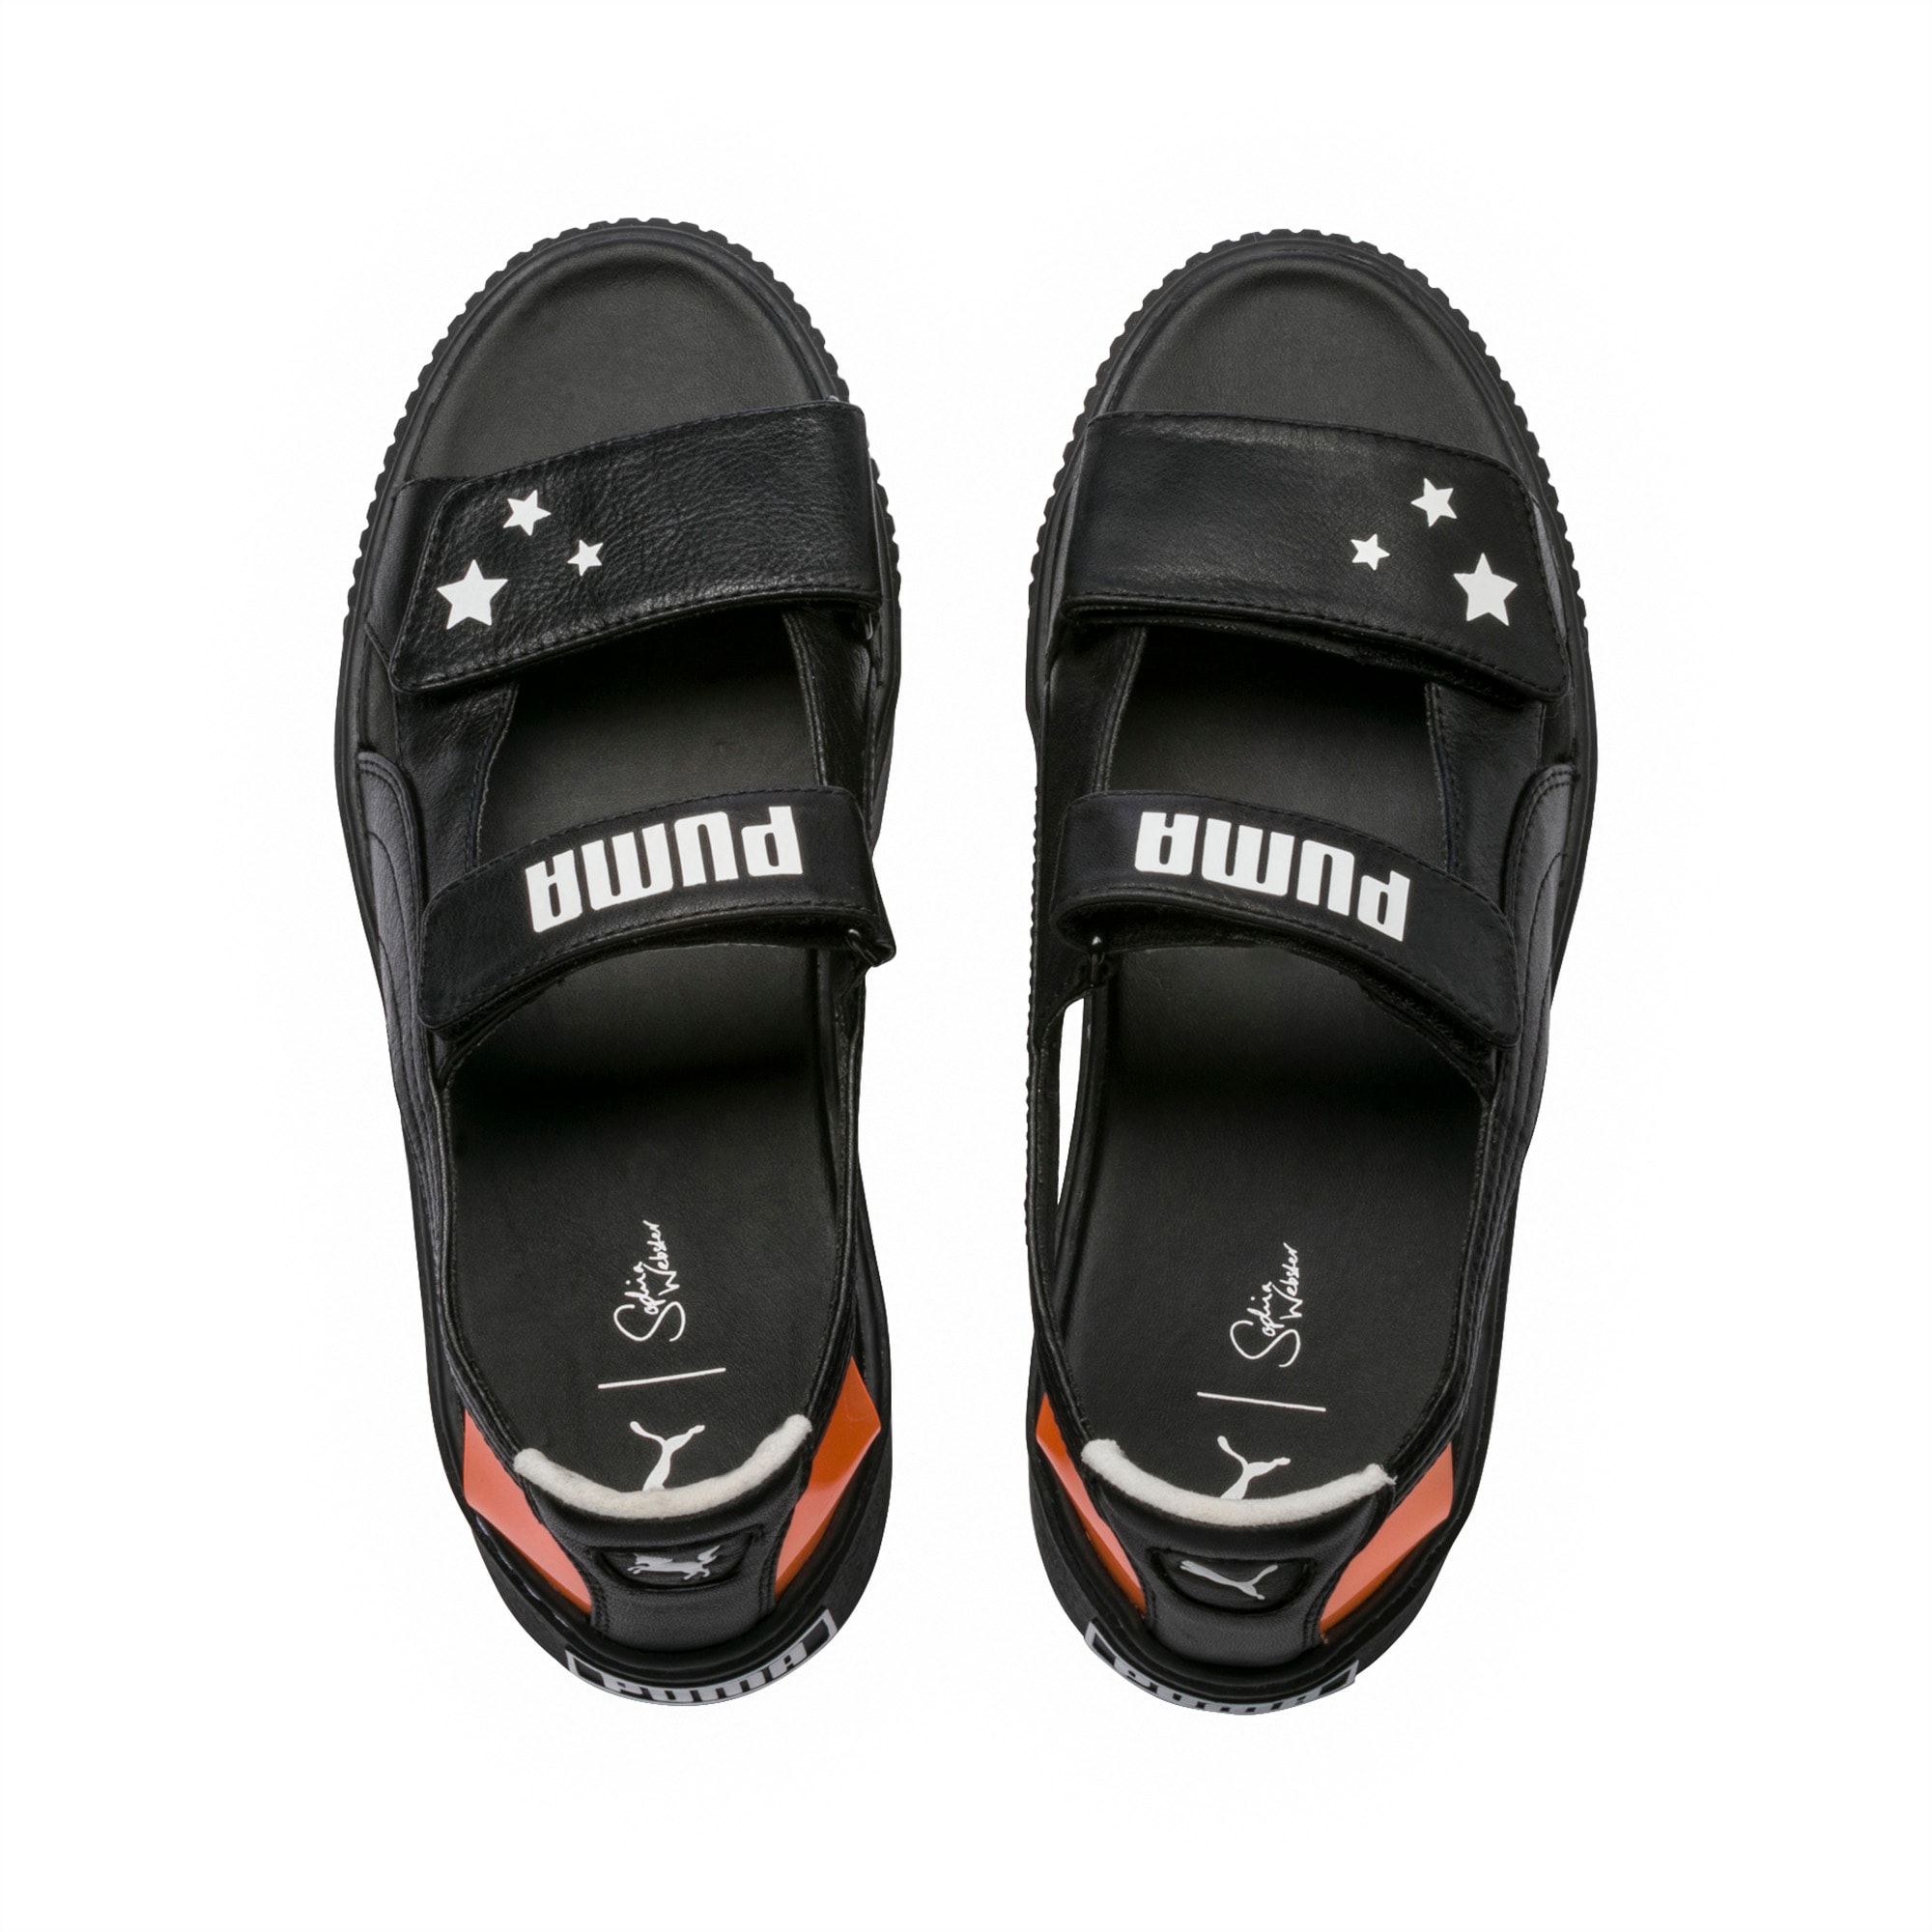 puma sophia webster platform sandals